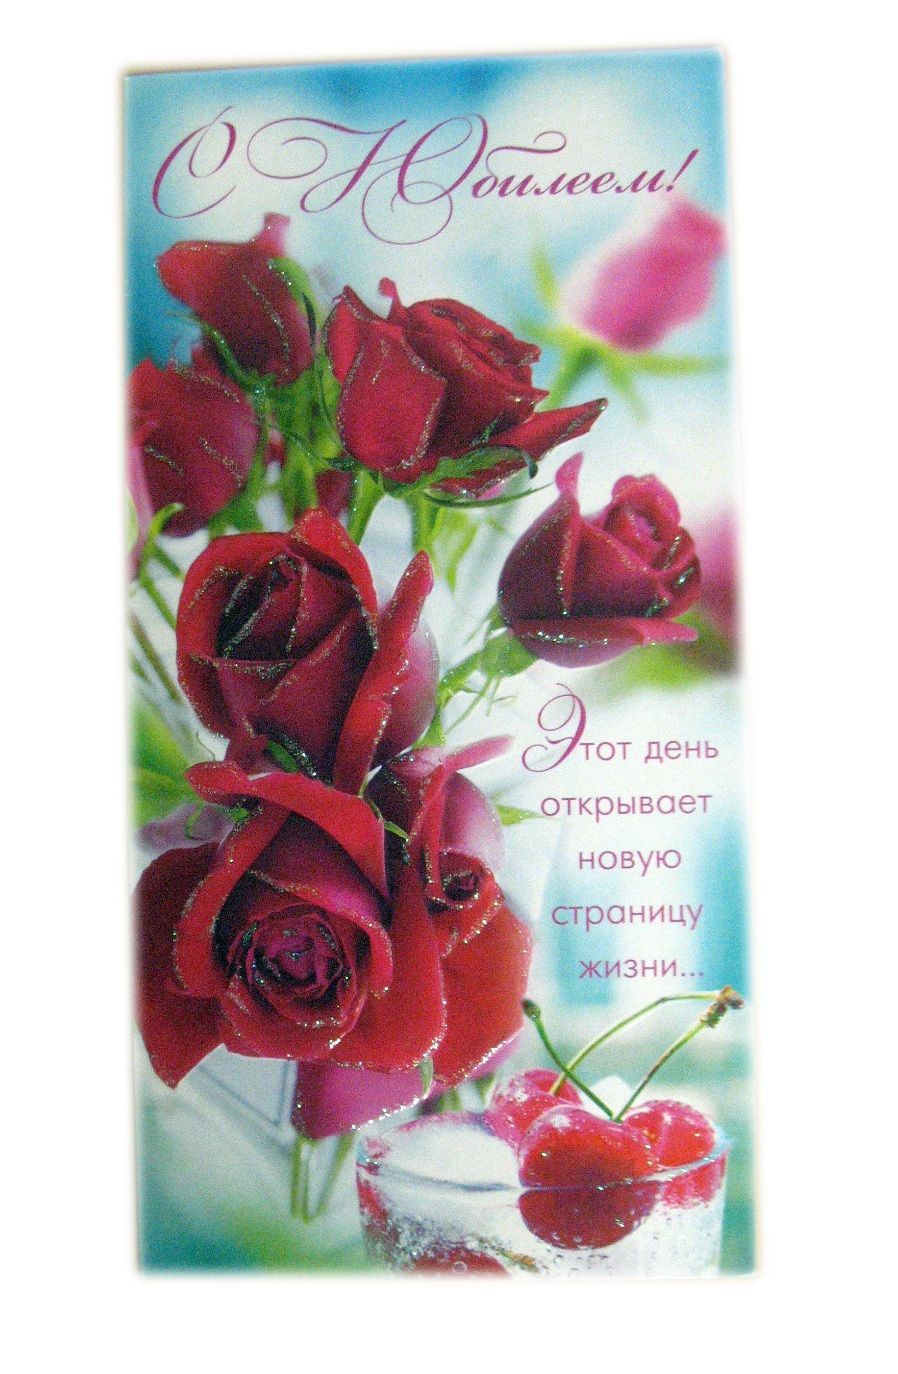 Russian Birthday Card | My Birthday | Birthday Cards, Birthday, Cards - Free Printable Russian Birthday Cards